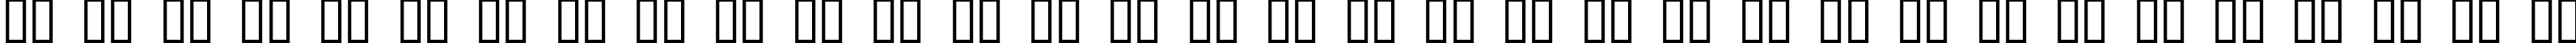 Пример написания русского алфавита шрифтом Aaargh Normal